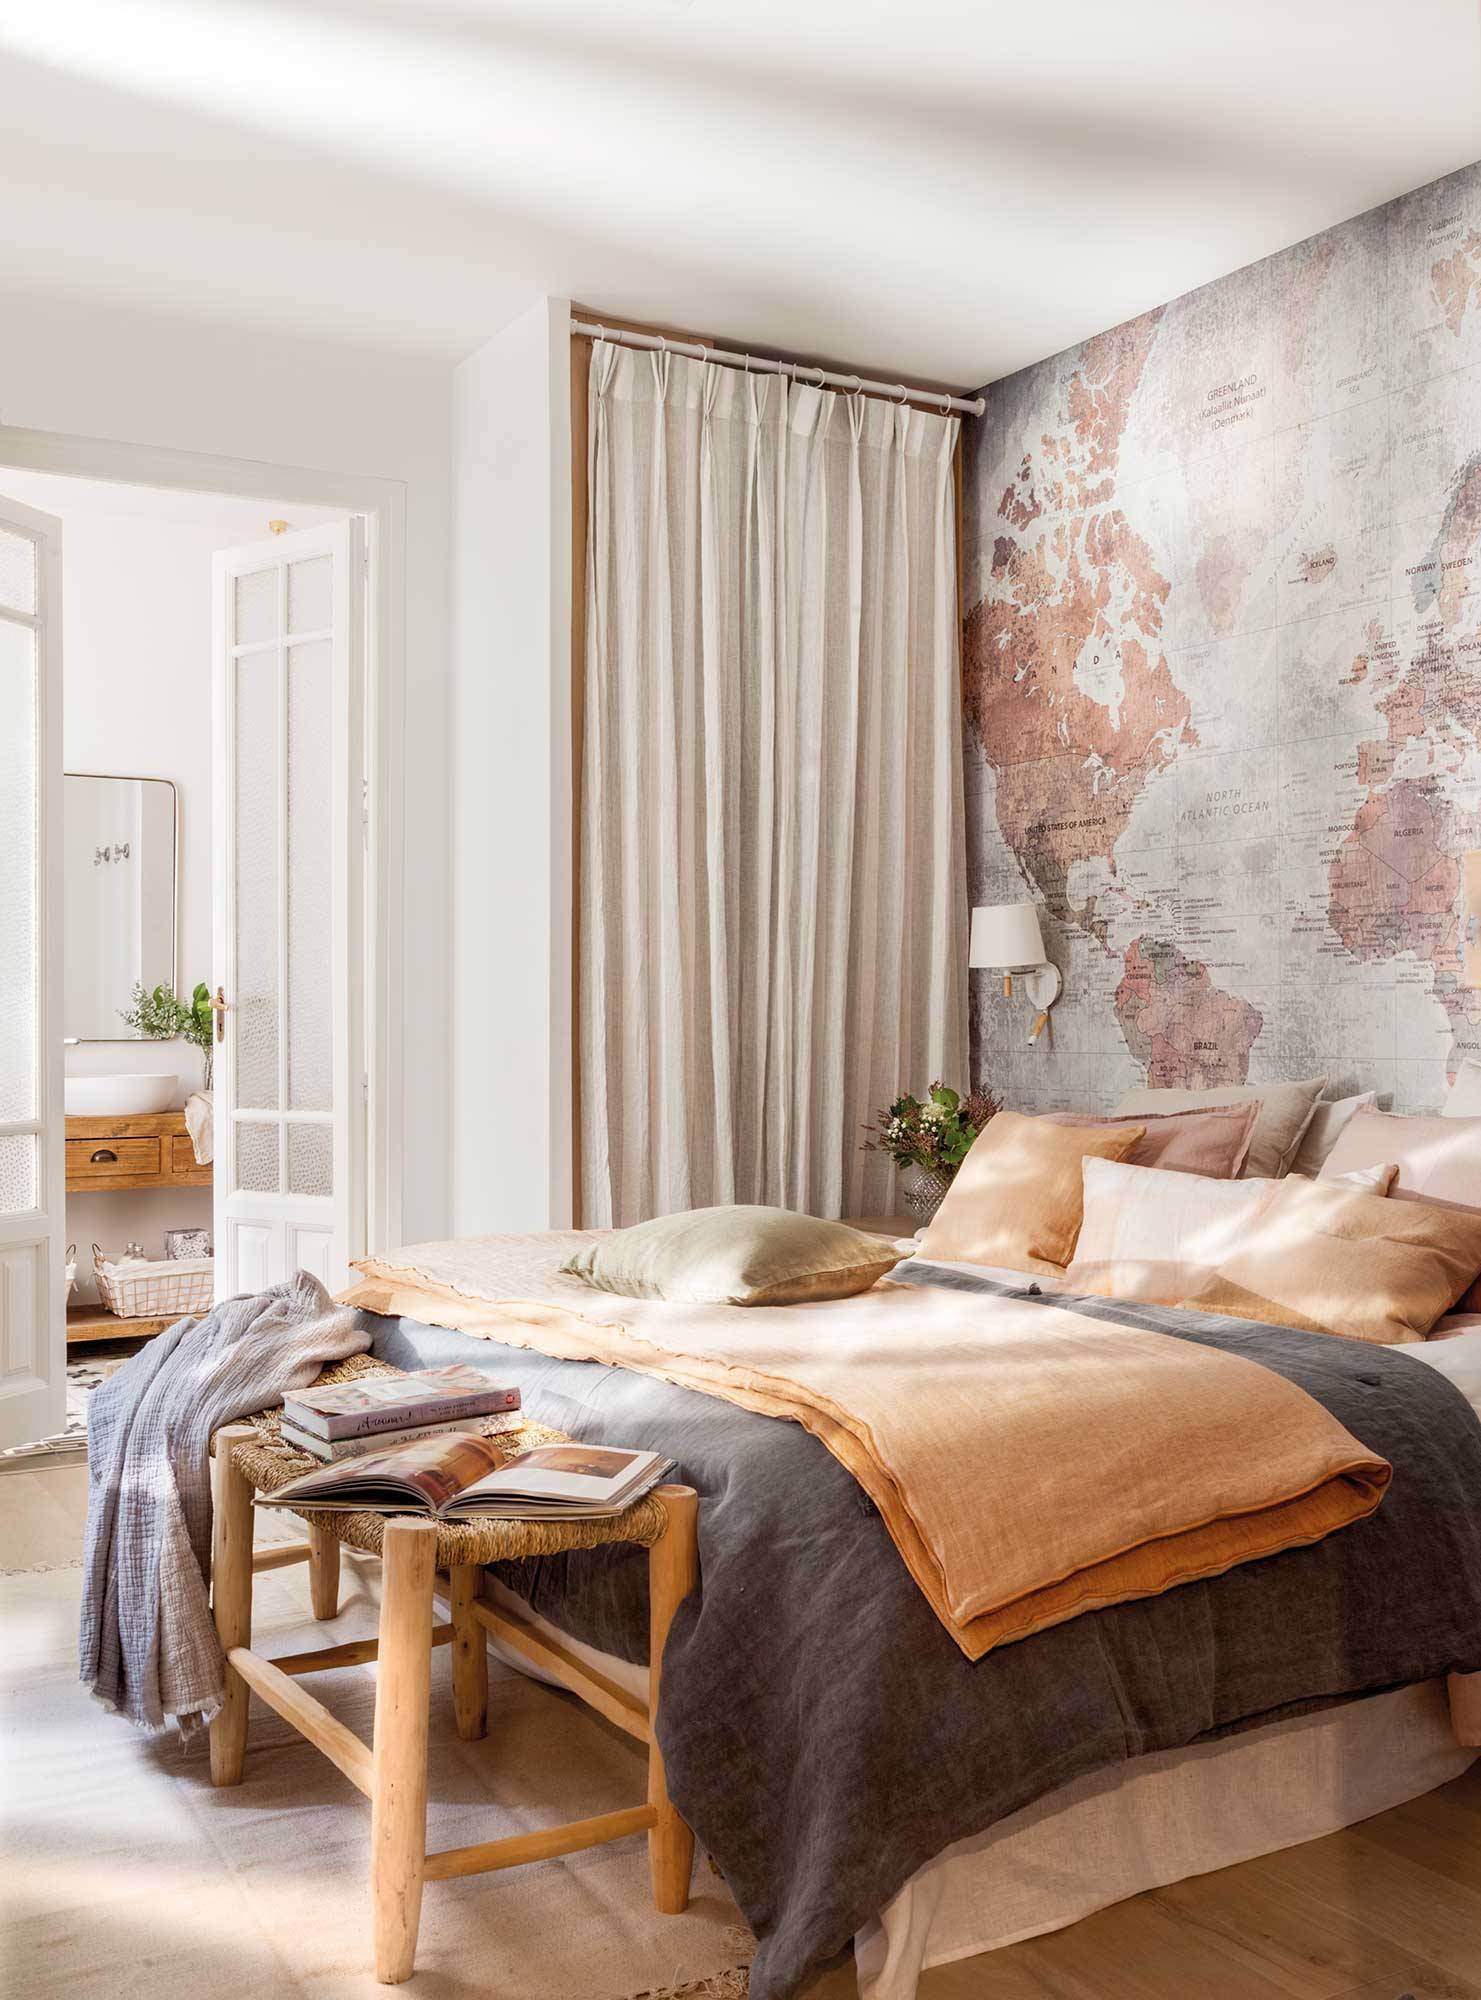 Dormitorio con mural de mapamundi en la pared del cabecero y armario cerrado con cortinas_00498883